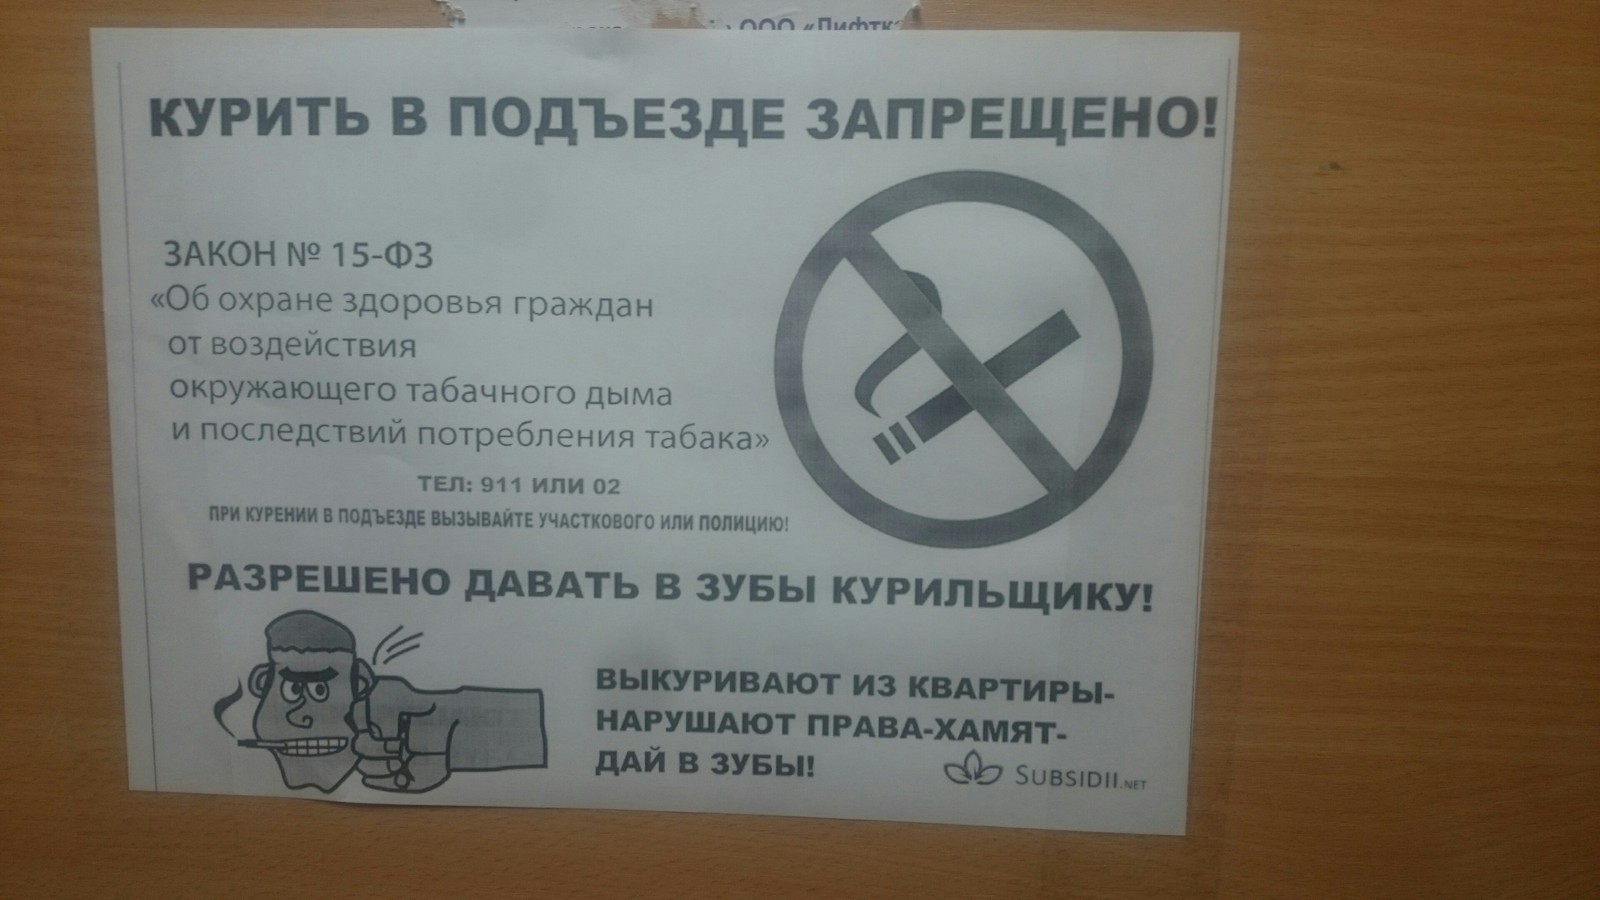 Запрещено курить в подъезде. Запрет курить в подъезде. Объявление не курить в подъезде. Объявление о курении в подъезде. Объявление о запрете курения в подъезде.